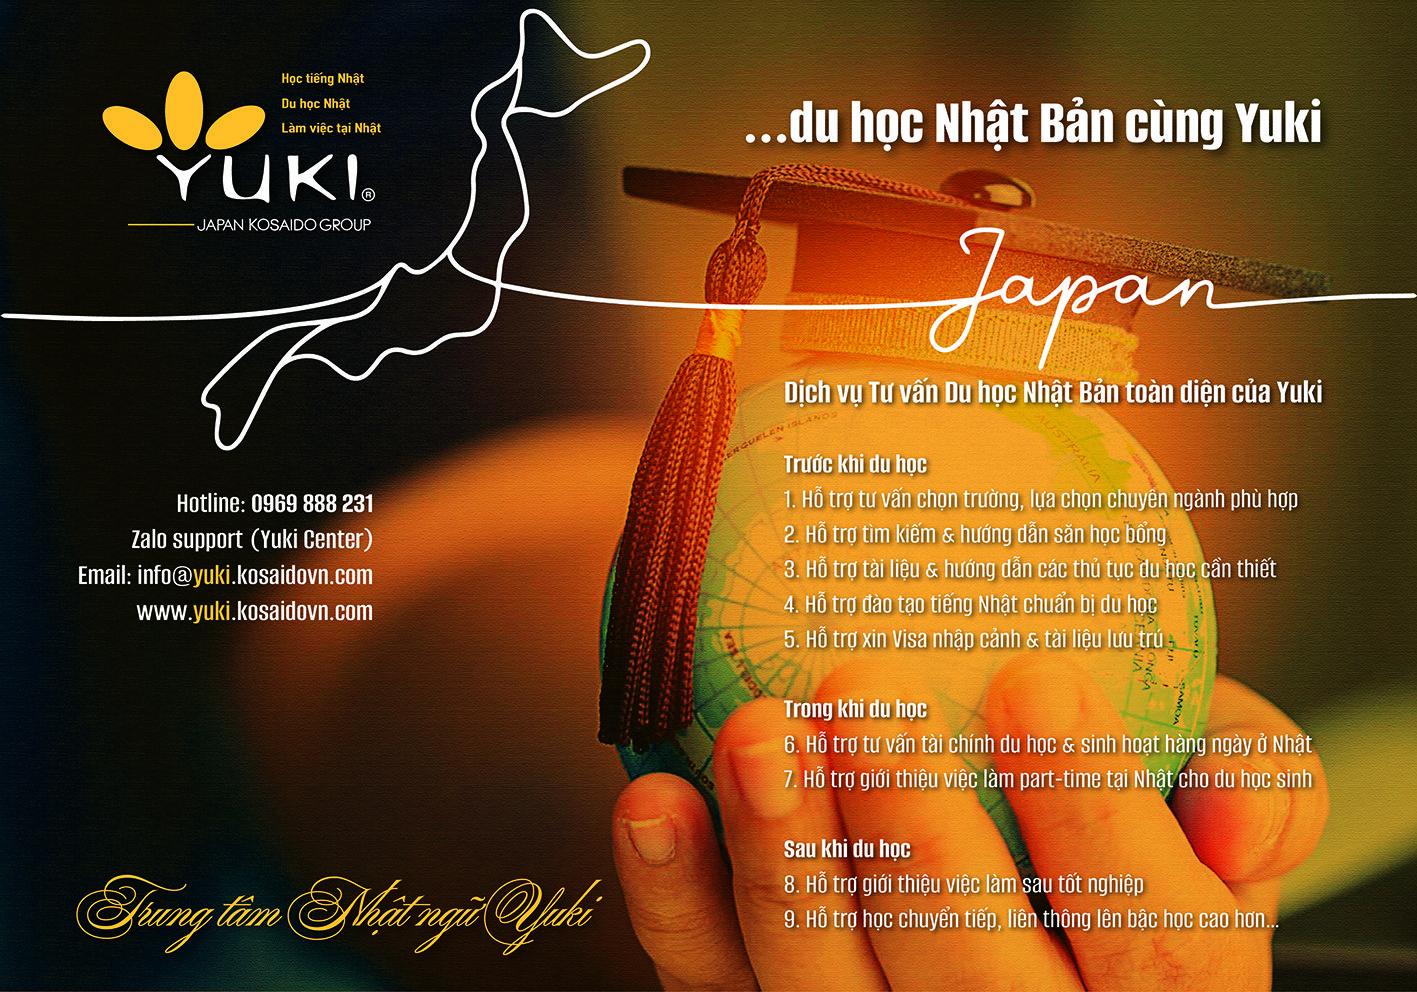 Nhật ngữ Yuki - 17 năm chắp cánh ước mơ du học Nhật Bản-2